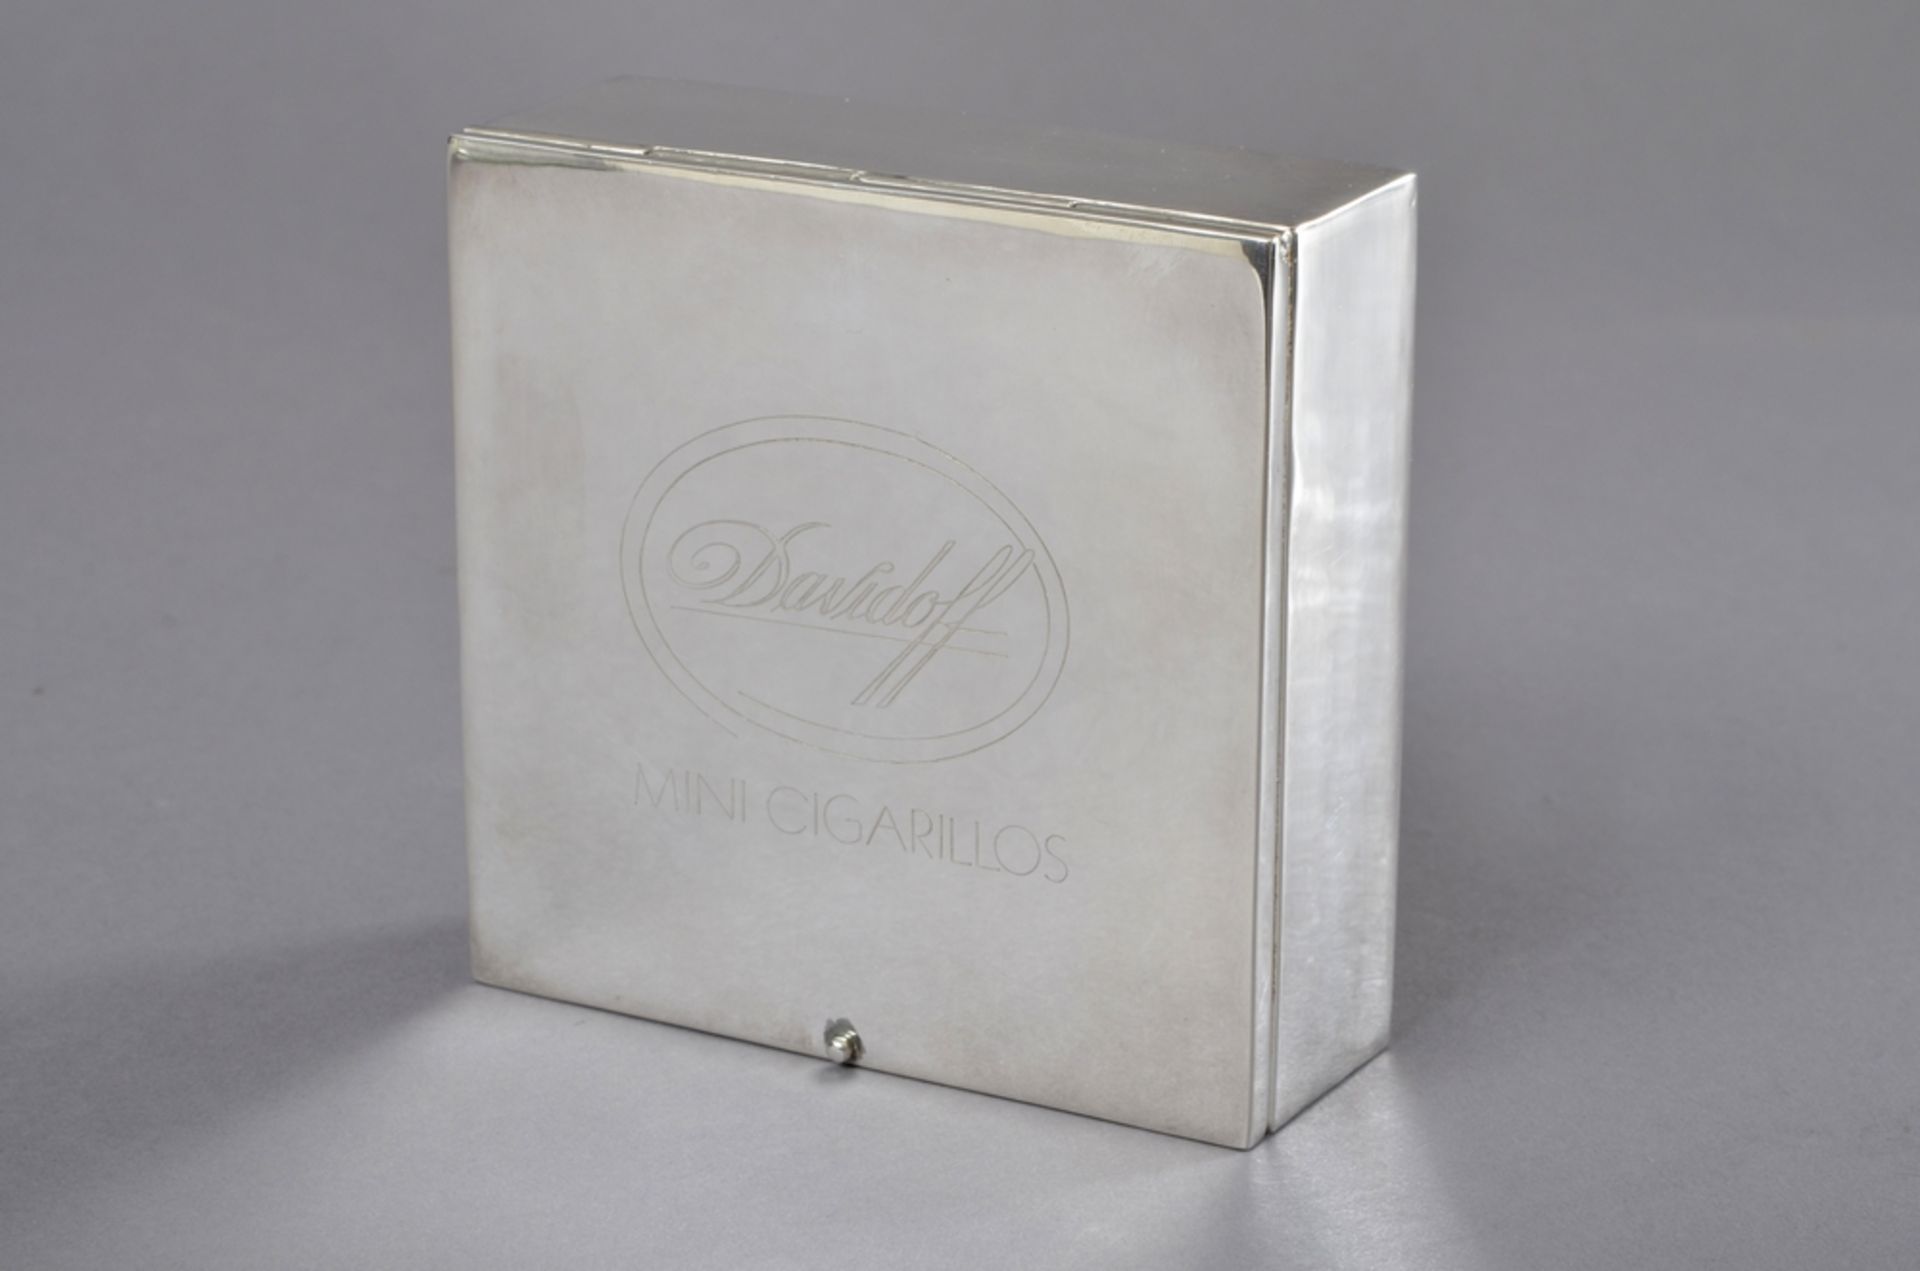 Eckige Zigarillo Box mit graviertem Deckel "Davidoff Mini Cigarillos", Handarbeit, Silber 999, 411g - Bild 3 aus 9